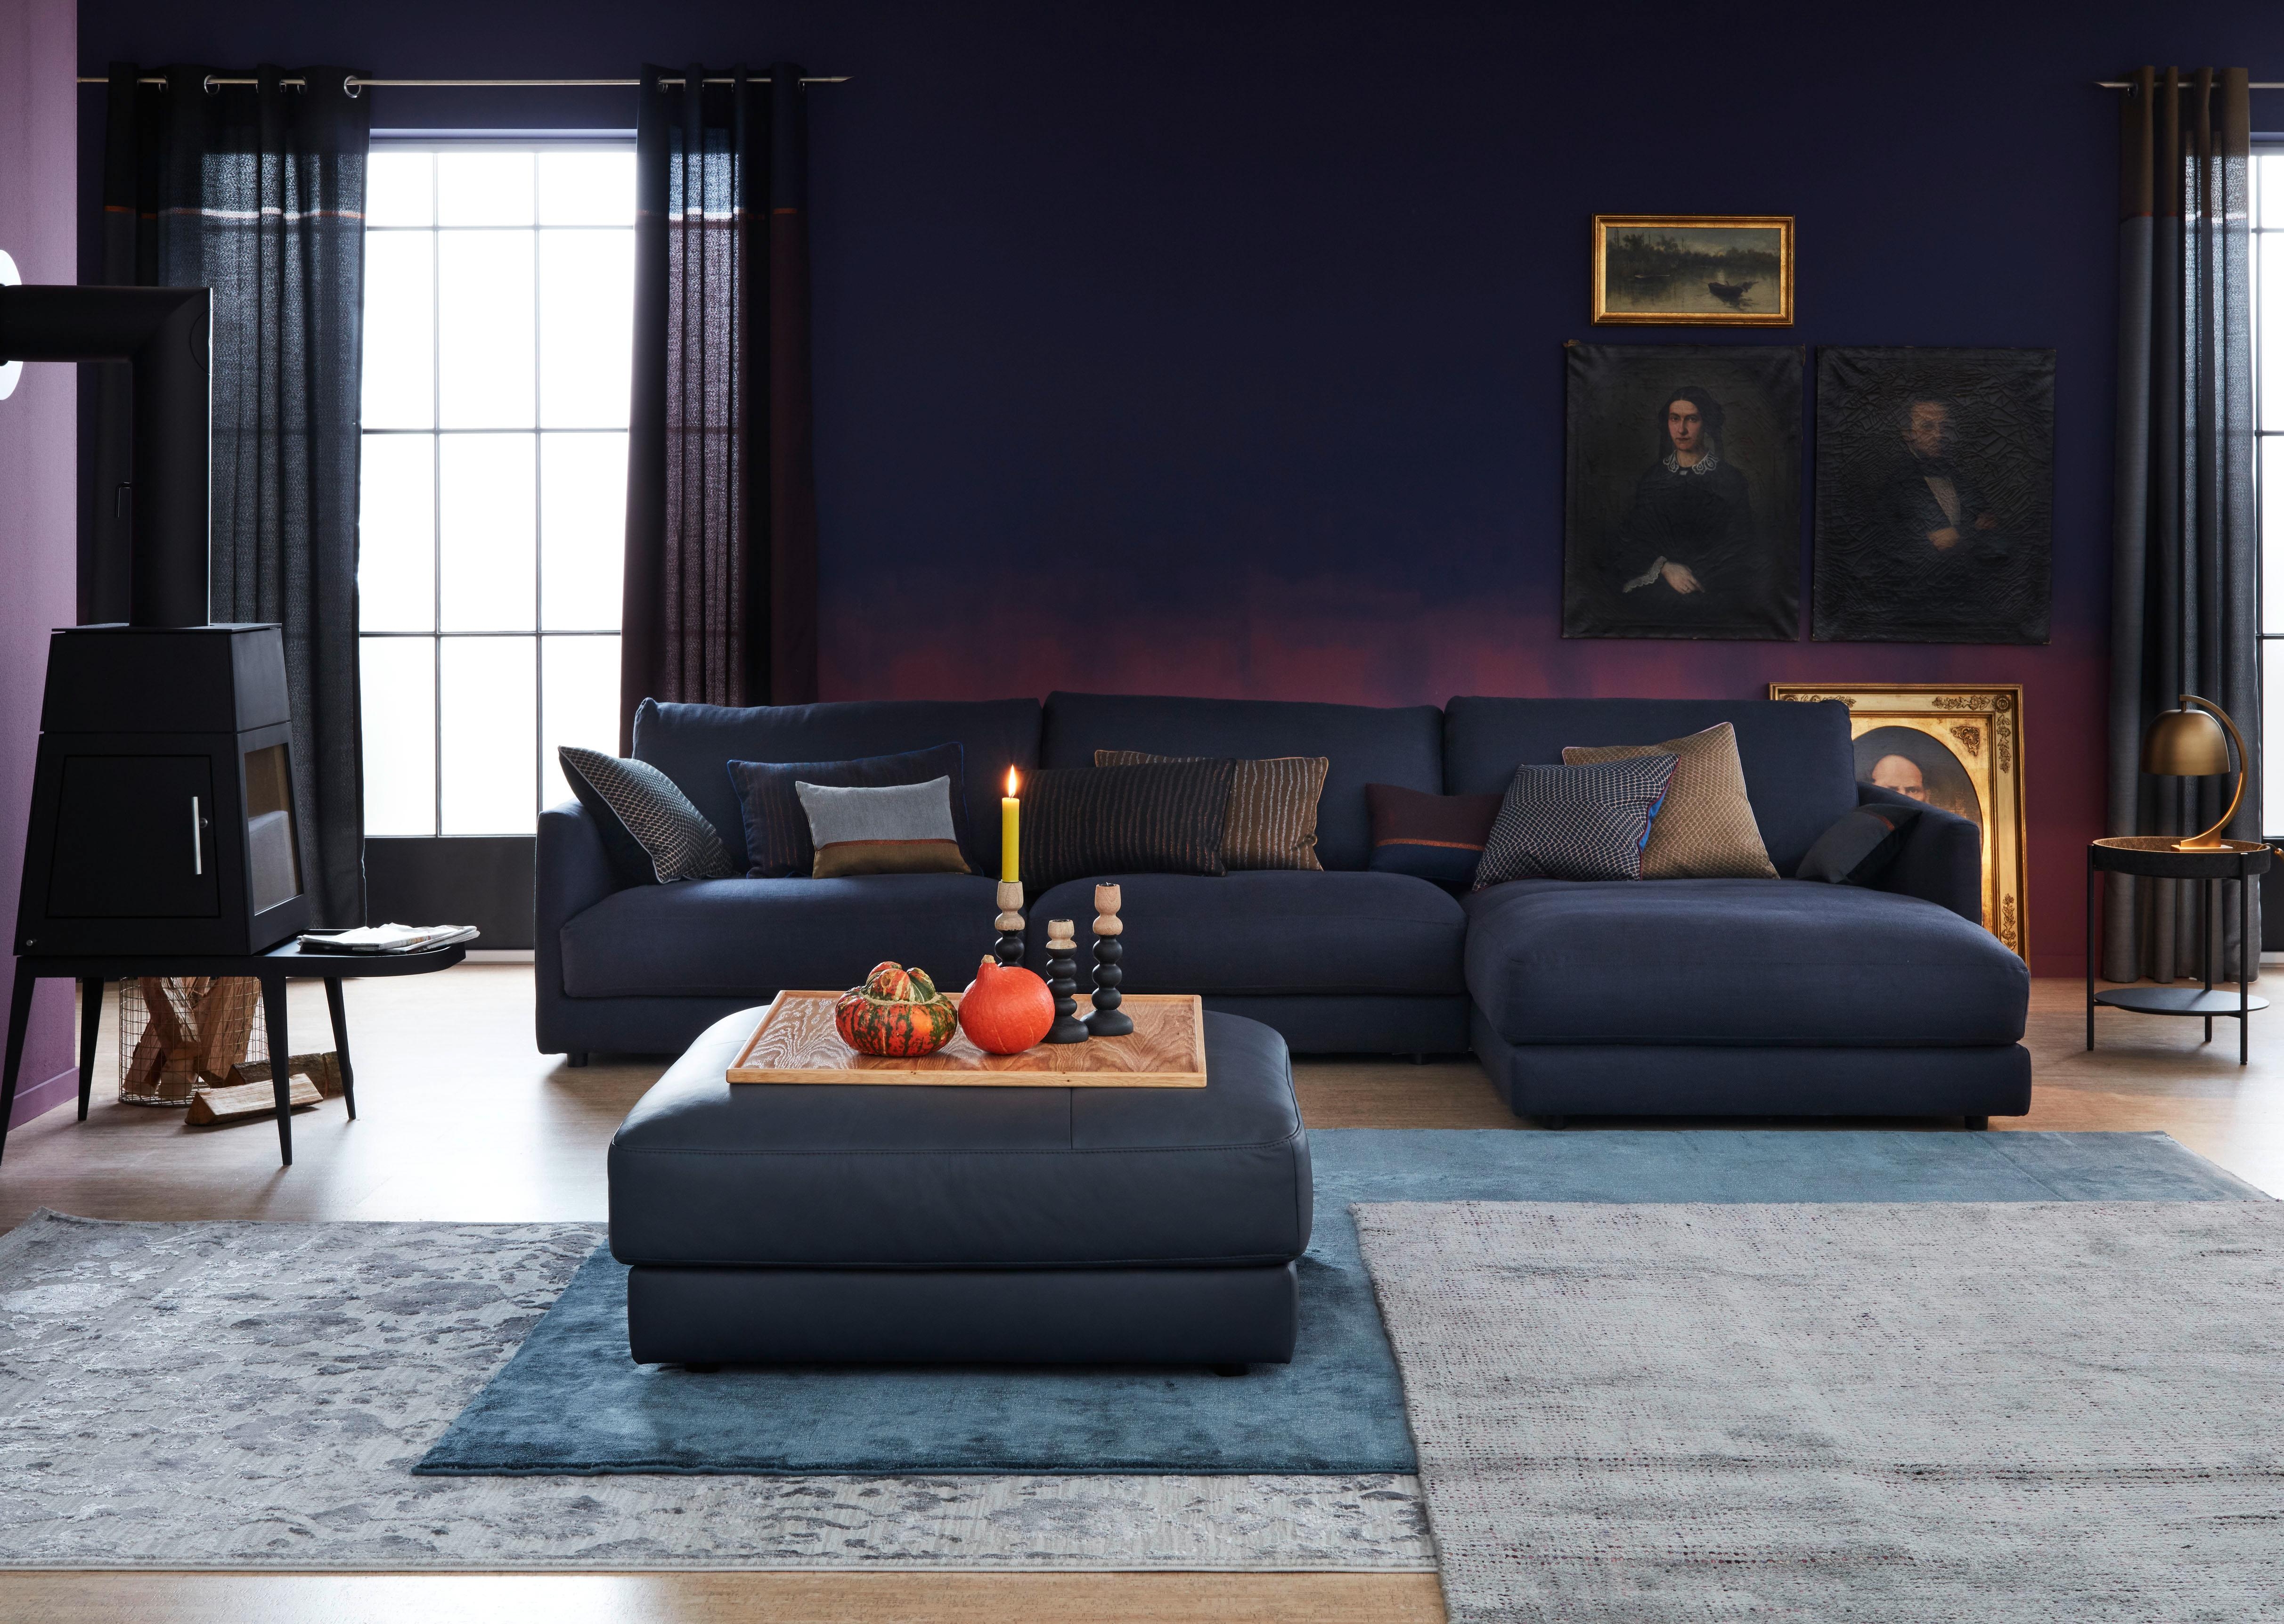 Wohnzimmer ganz in Blau getaucht! Wir lieben den edlen Look! #schoenerwohnenkollektion #wohnzimmer #Blau #Sofa